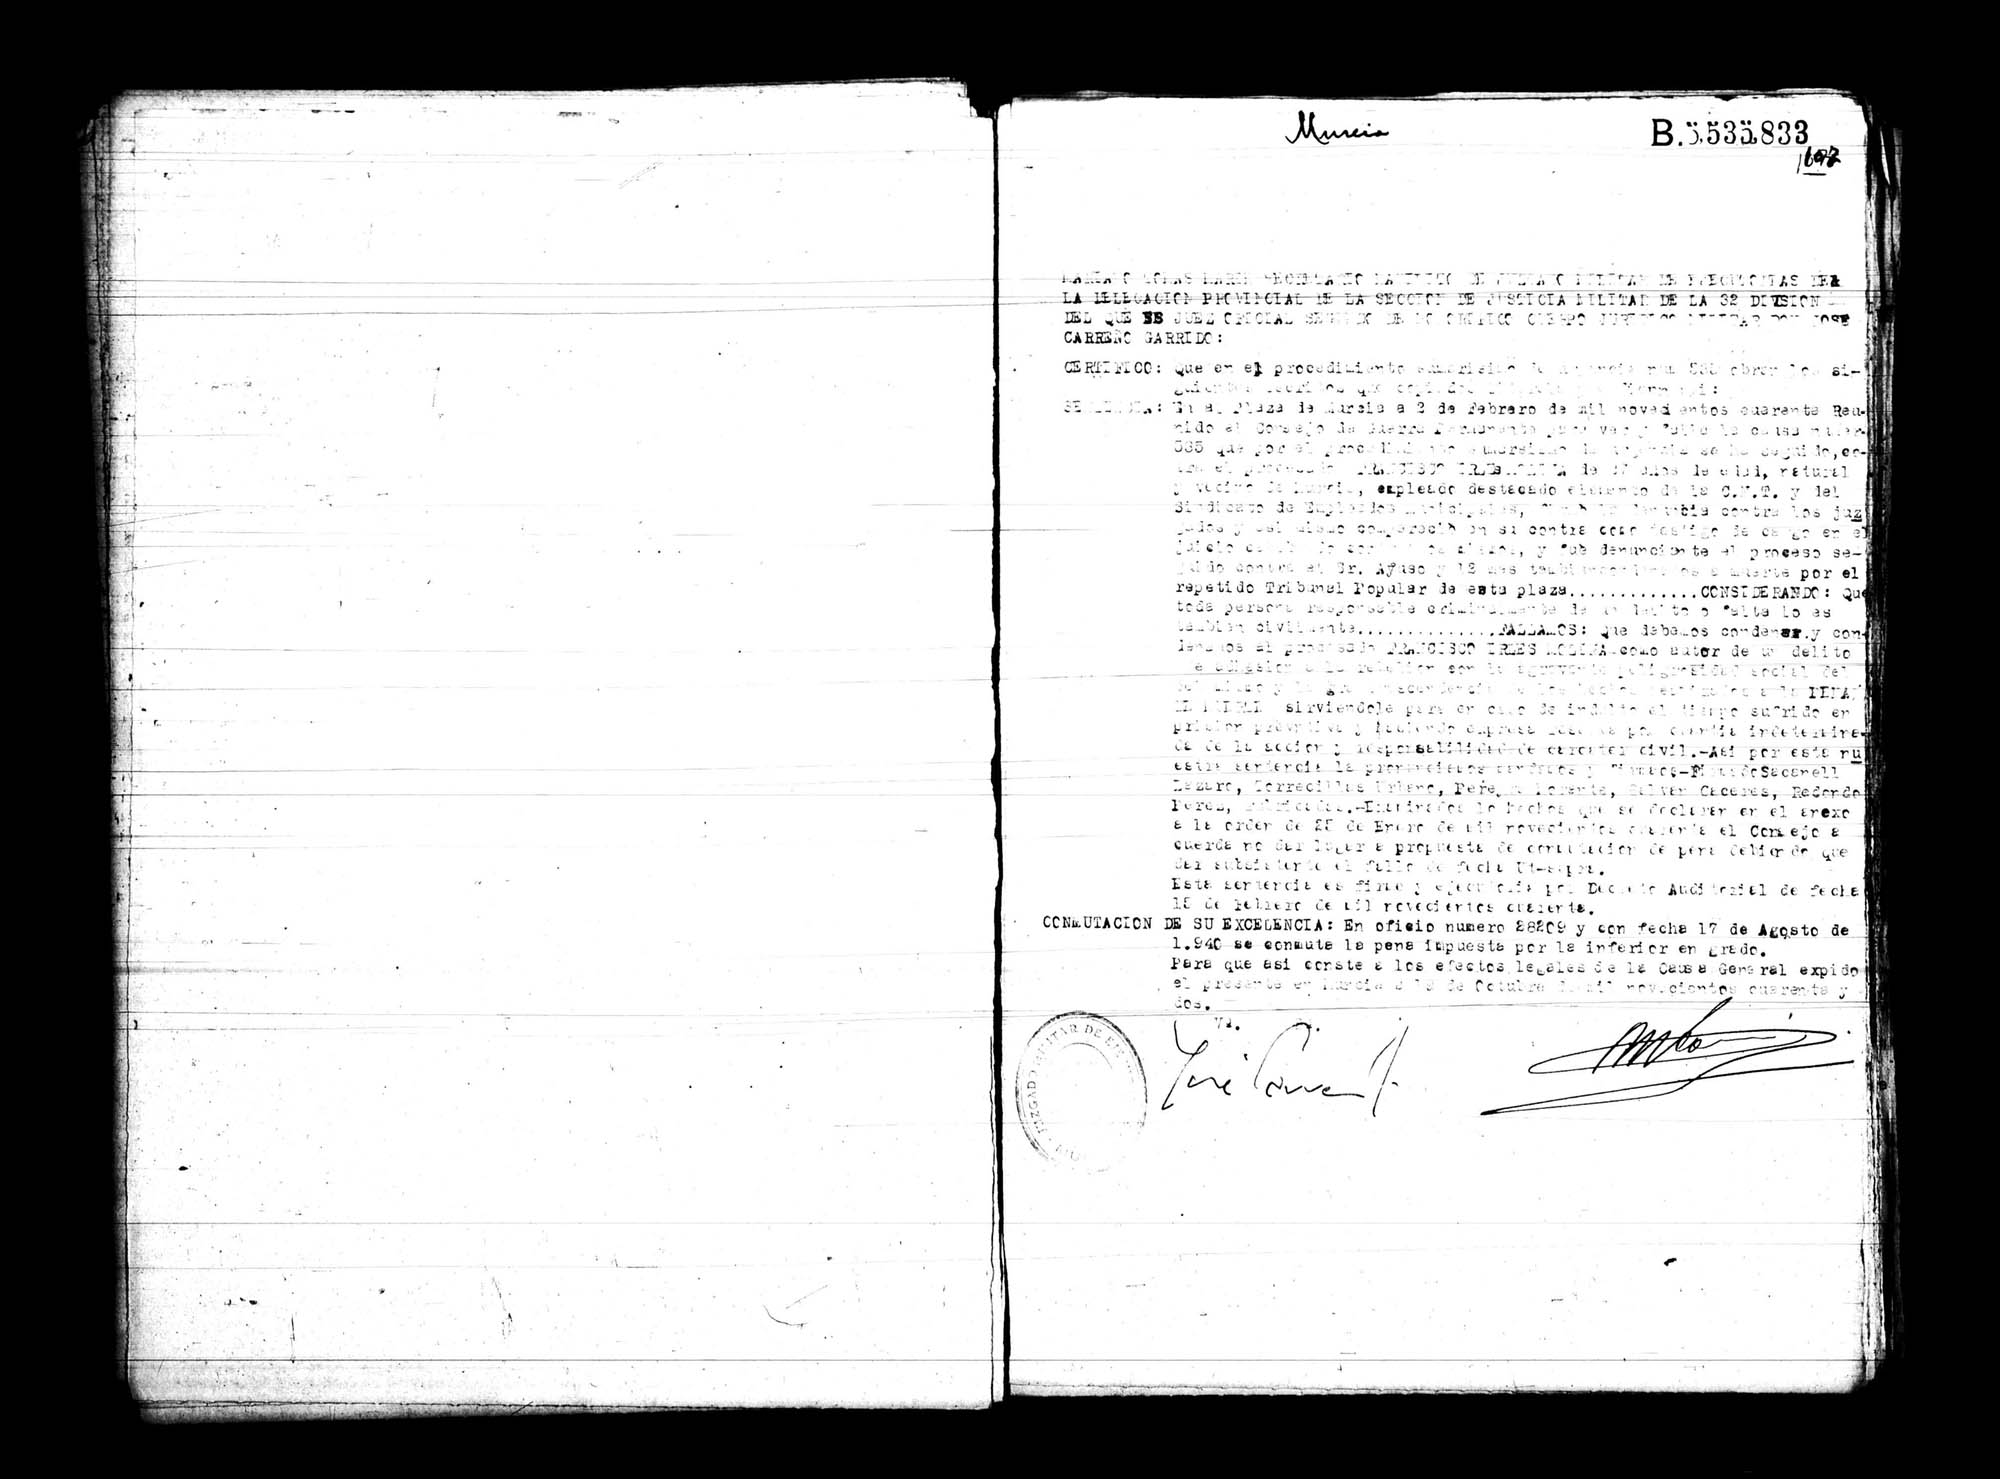 Certificado de la sentencia pronunciada contra Francisco Irles Molina, causa 535, el 2 de febrero de 1940.